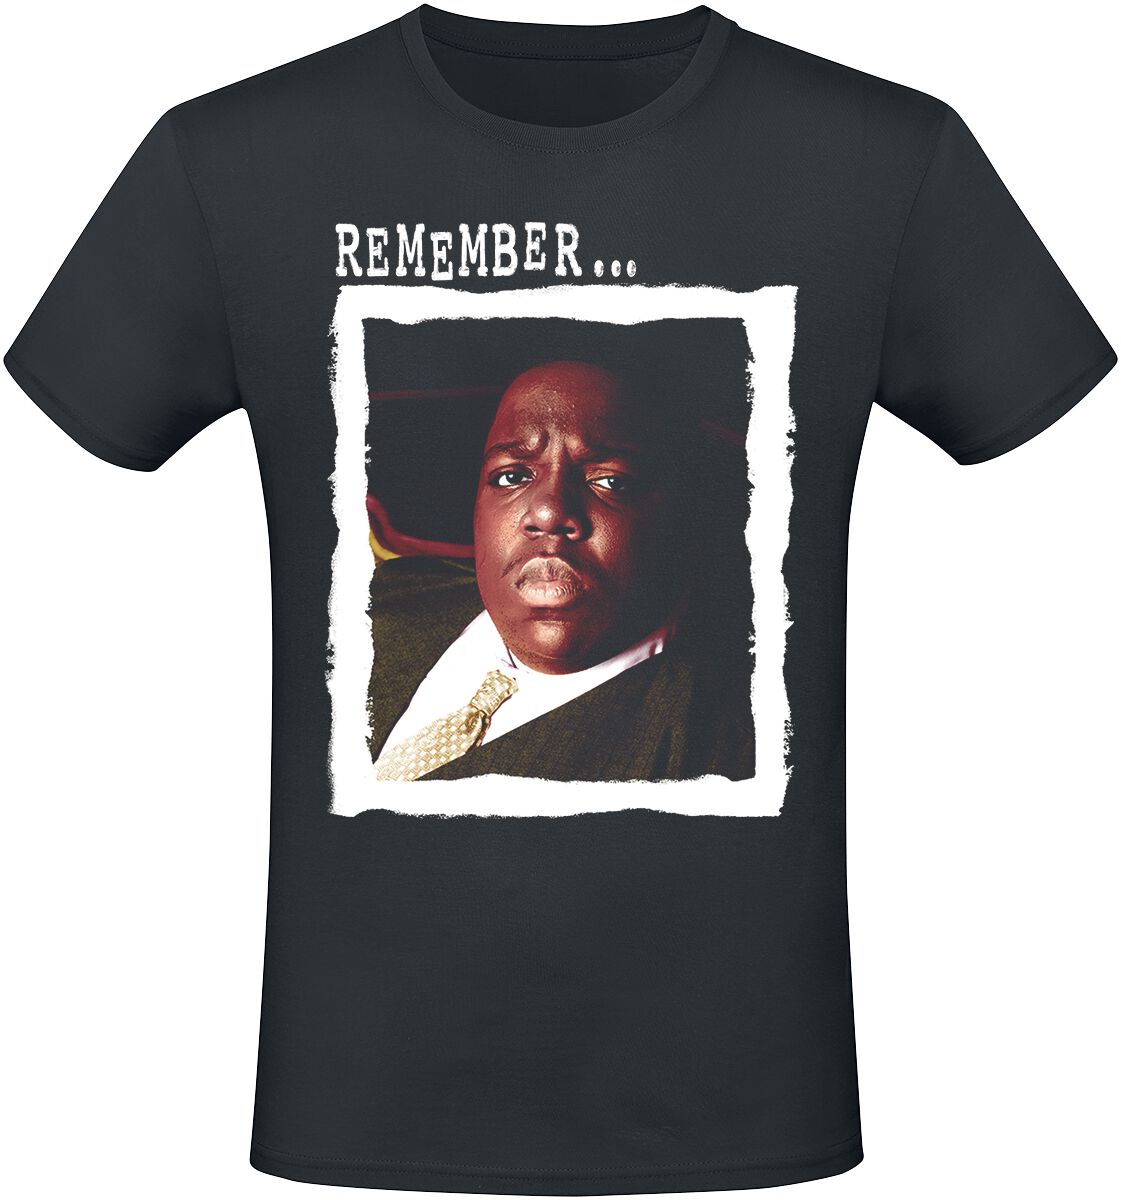 Notorious B.I.G. T-Shirt - Remember - S bis XXL - für Männer - Größe XL - schwarz  - Lizenziertes Merchandise!